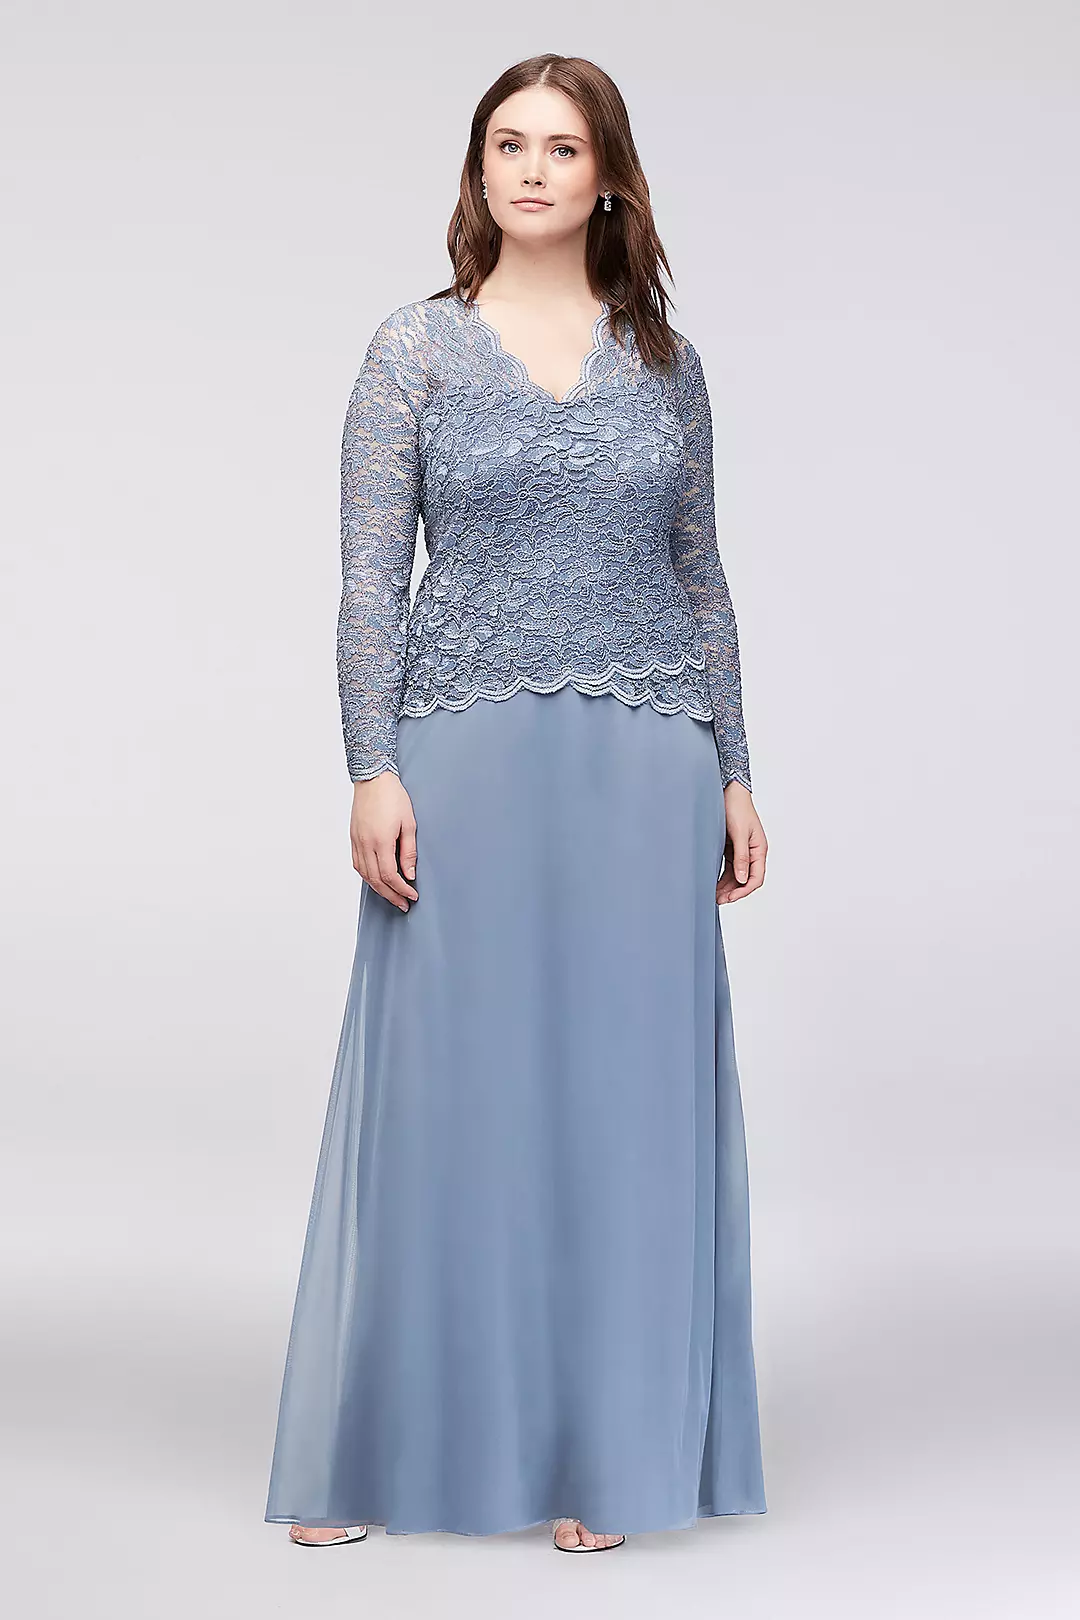 Long-Sleeve Lace and Chiffon Plus Size Dress Image